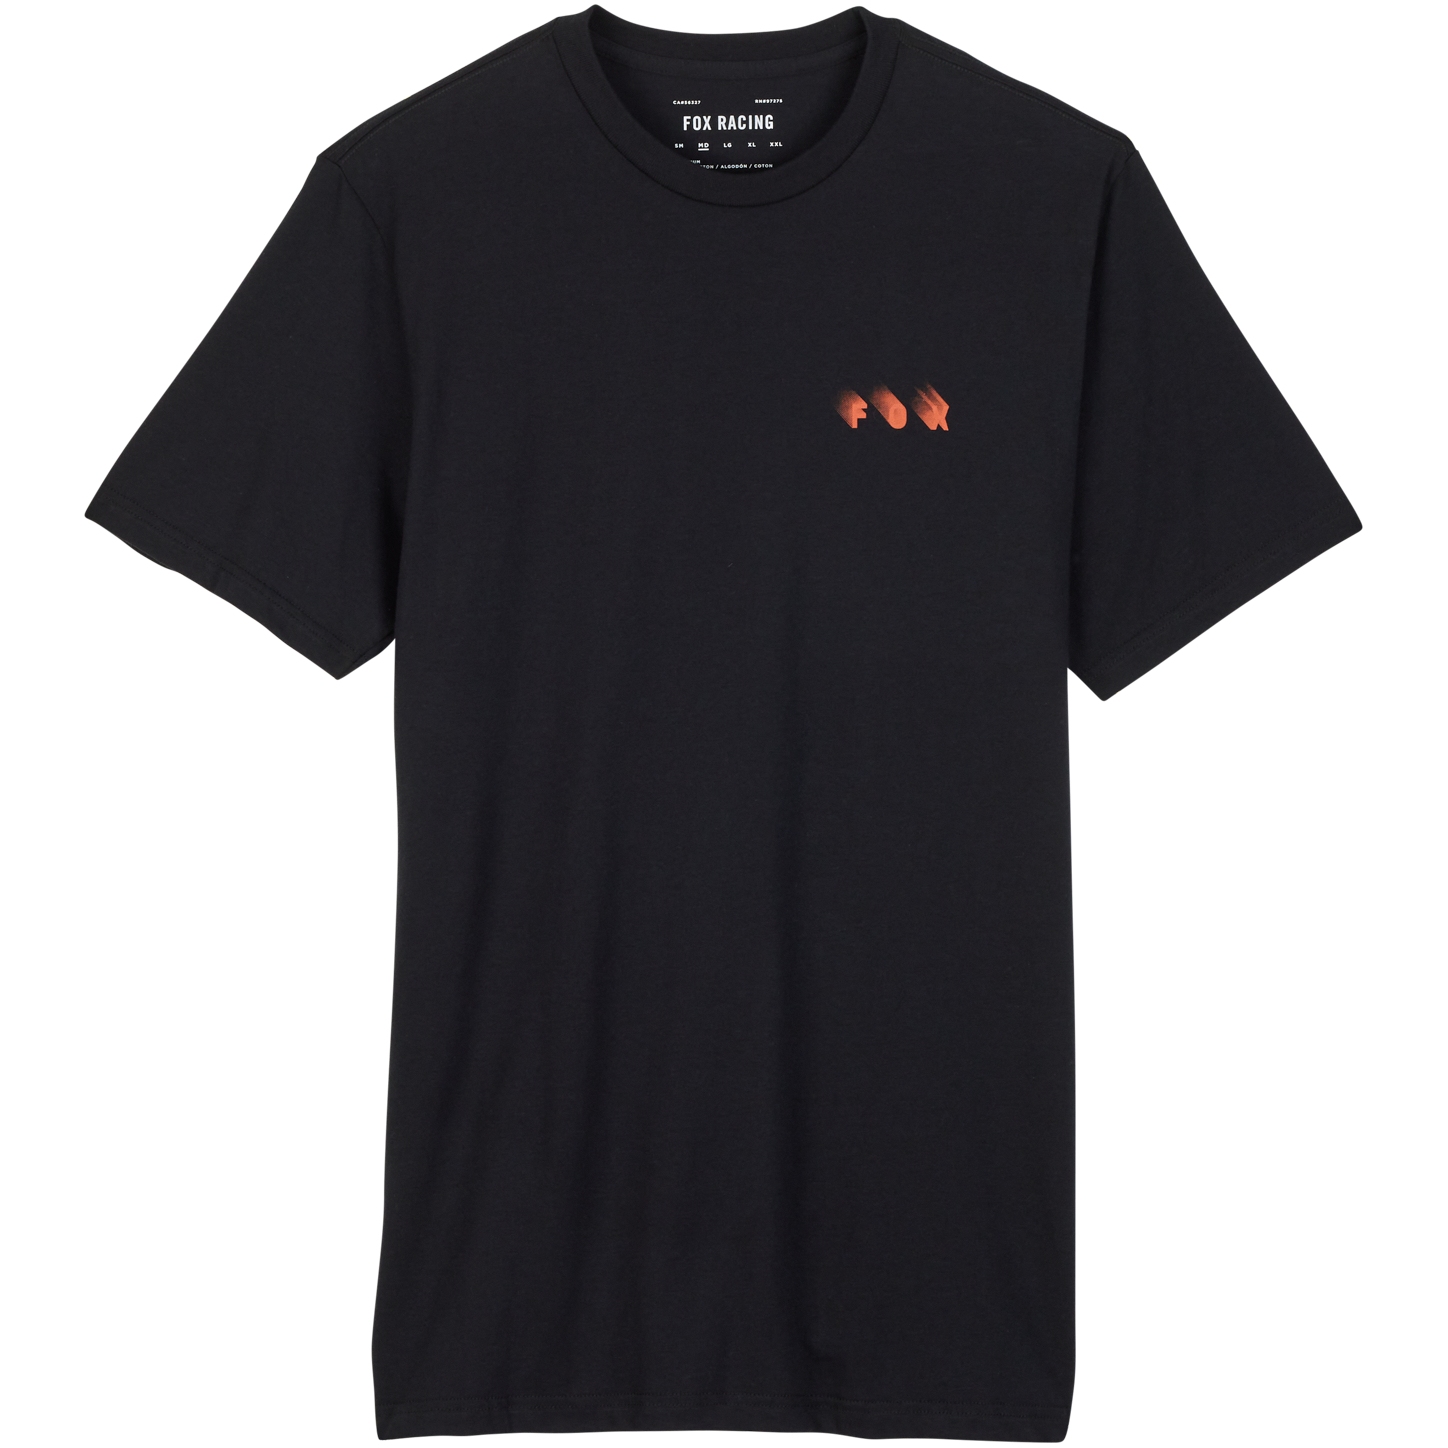 Produktbild von FOX Wayfaring Premium Kurzarmshirt Herren - schwarz